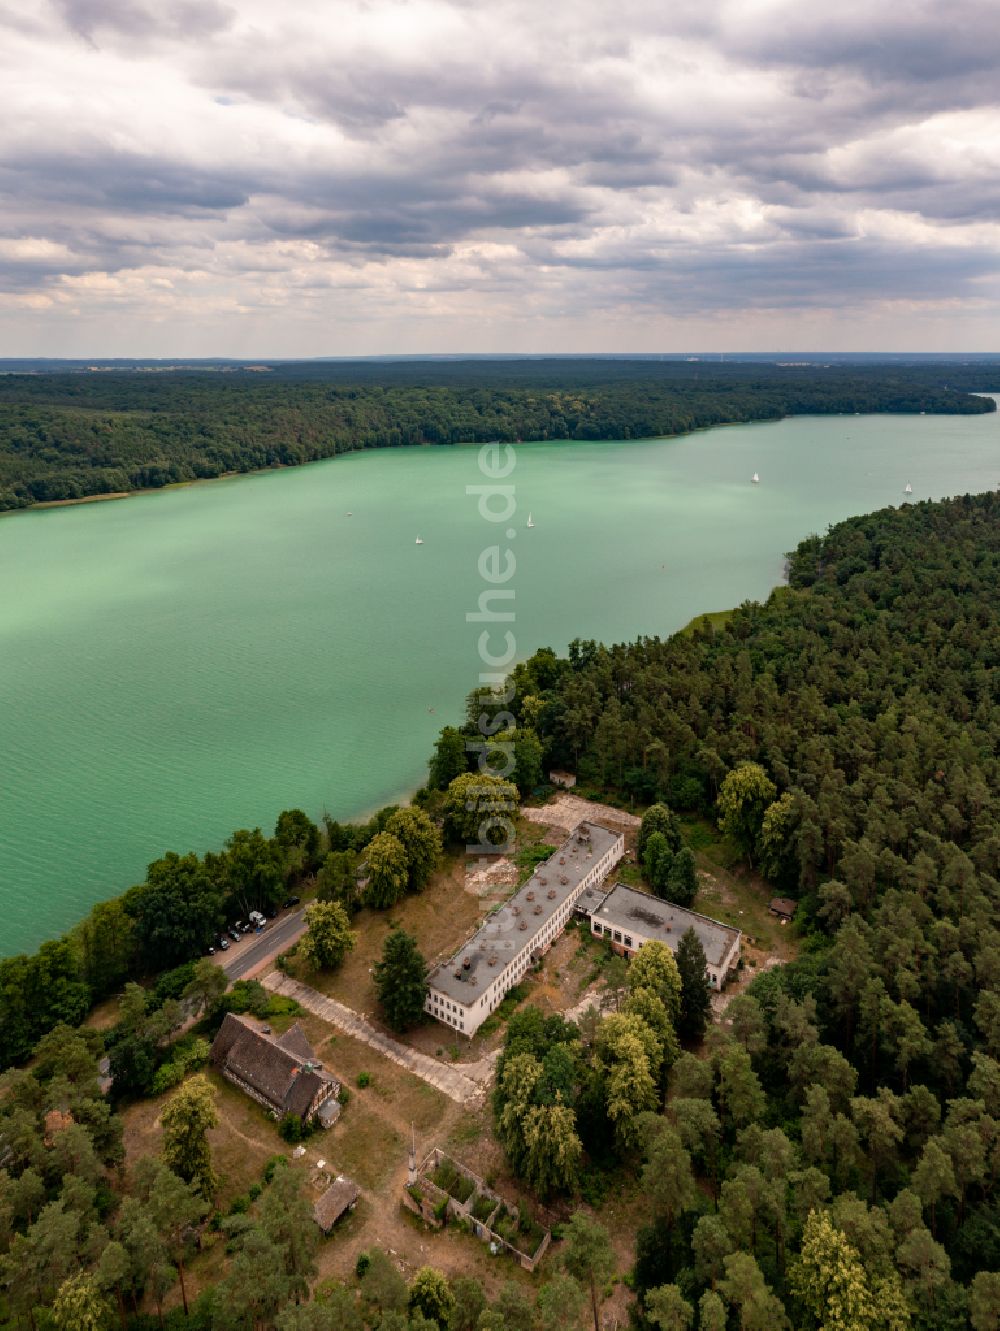 Luftbild Joachimsthal - Uferbereiche des Sees Werbellinsee entlang der Ruine Jugendtouristhotel in einem Waldgebiet in Joachimsthal im Bundesland Brandenburg, Deutschland